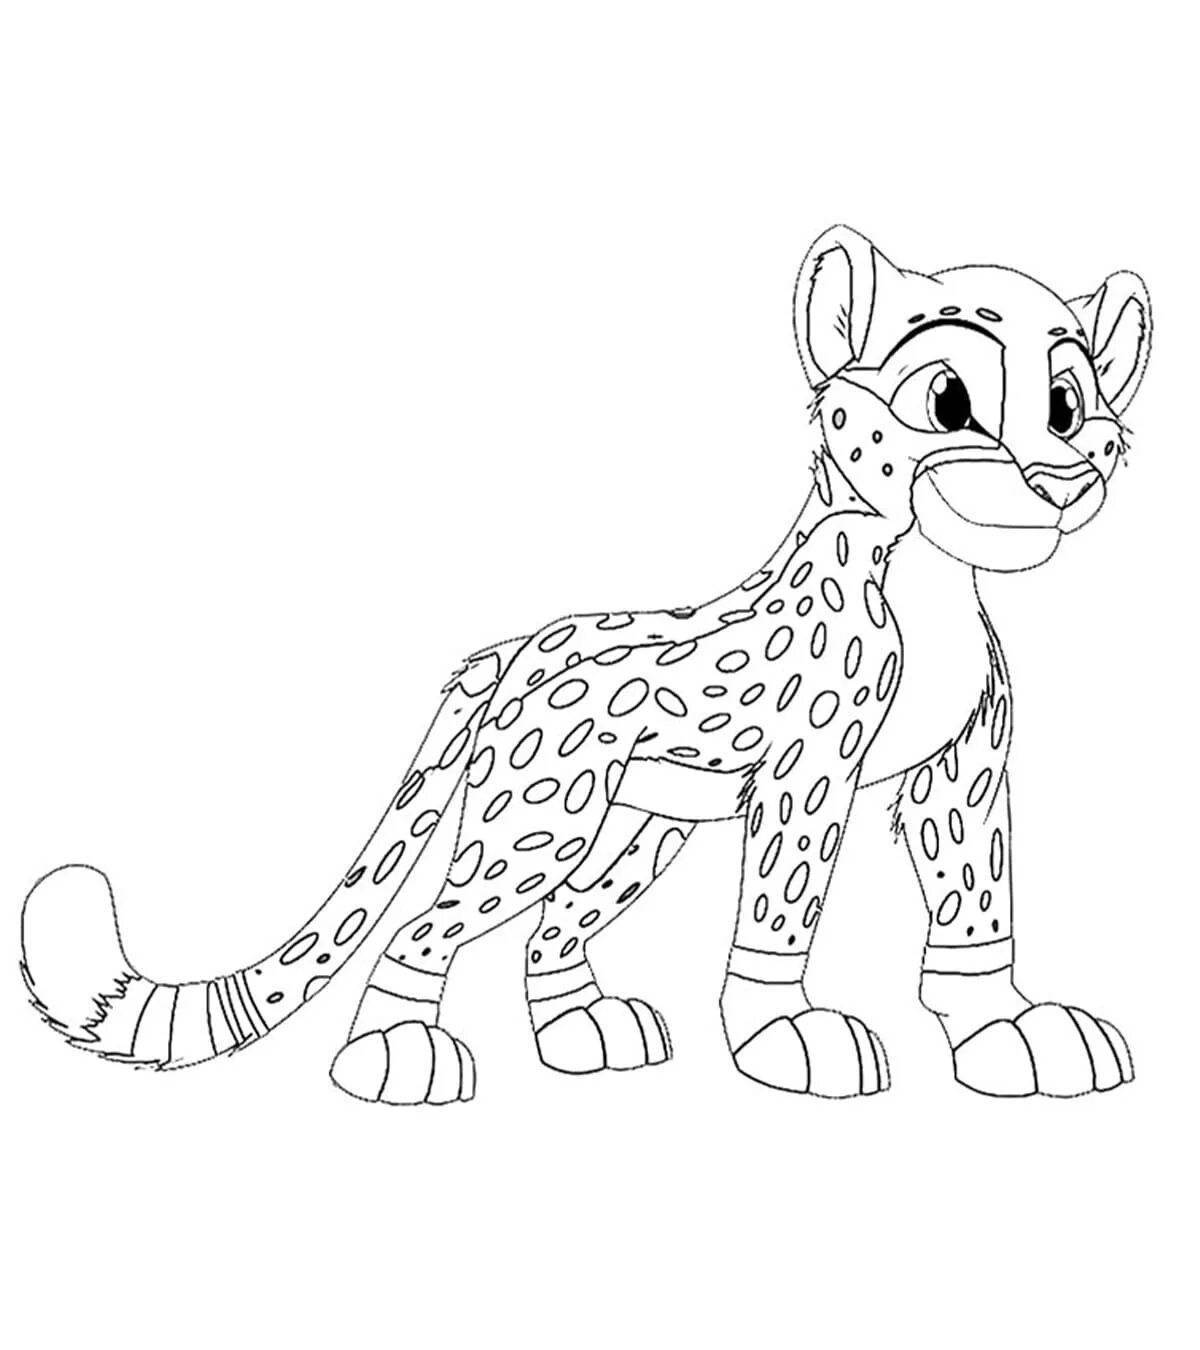 King cheetah fat coloring